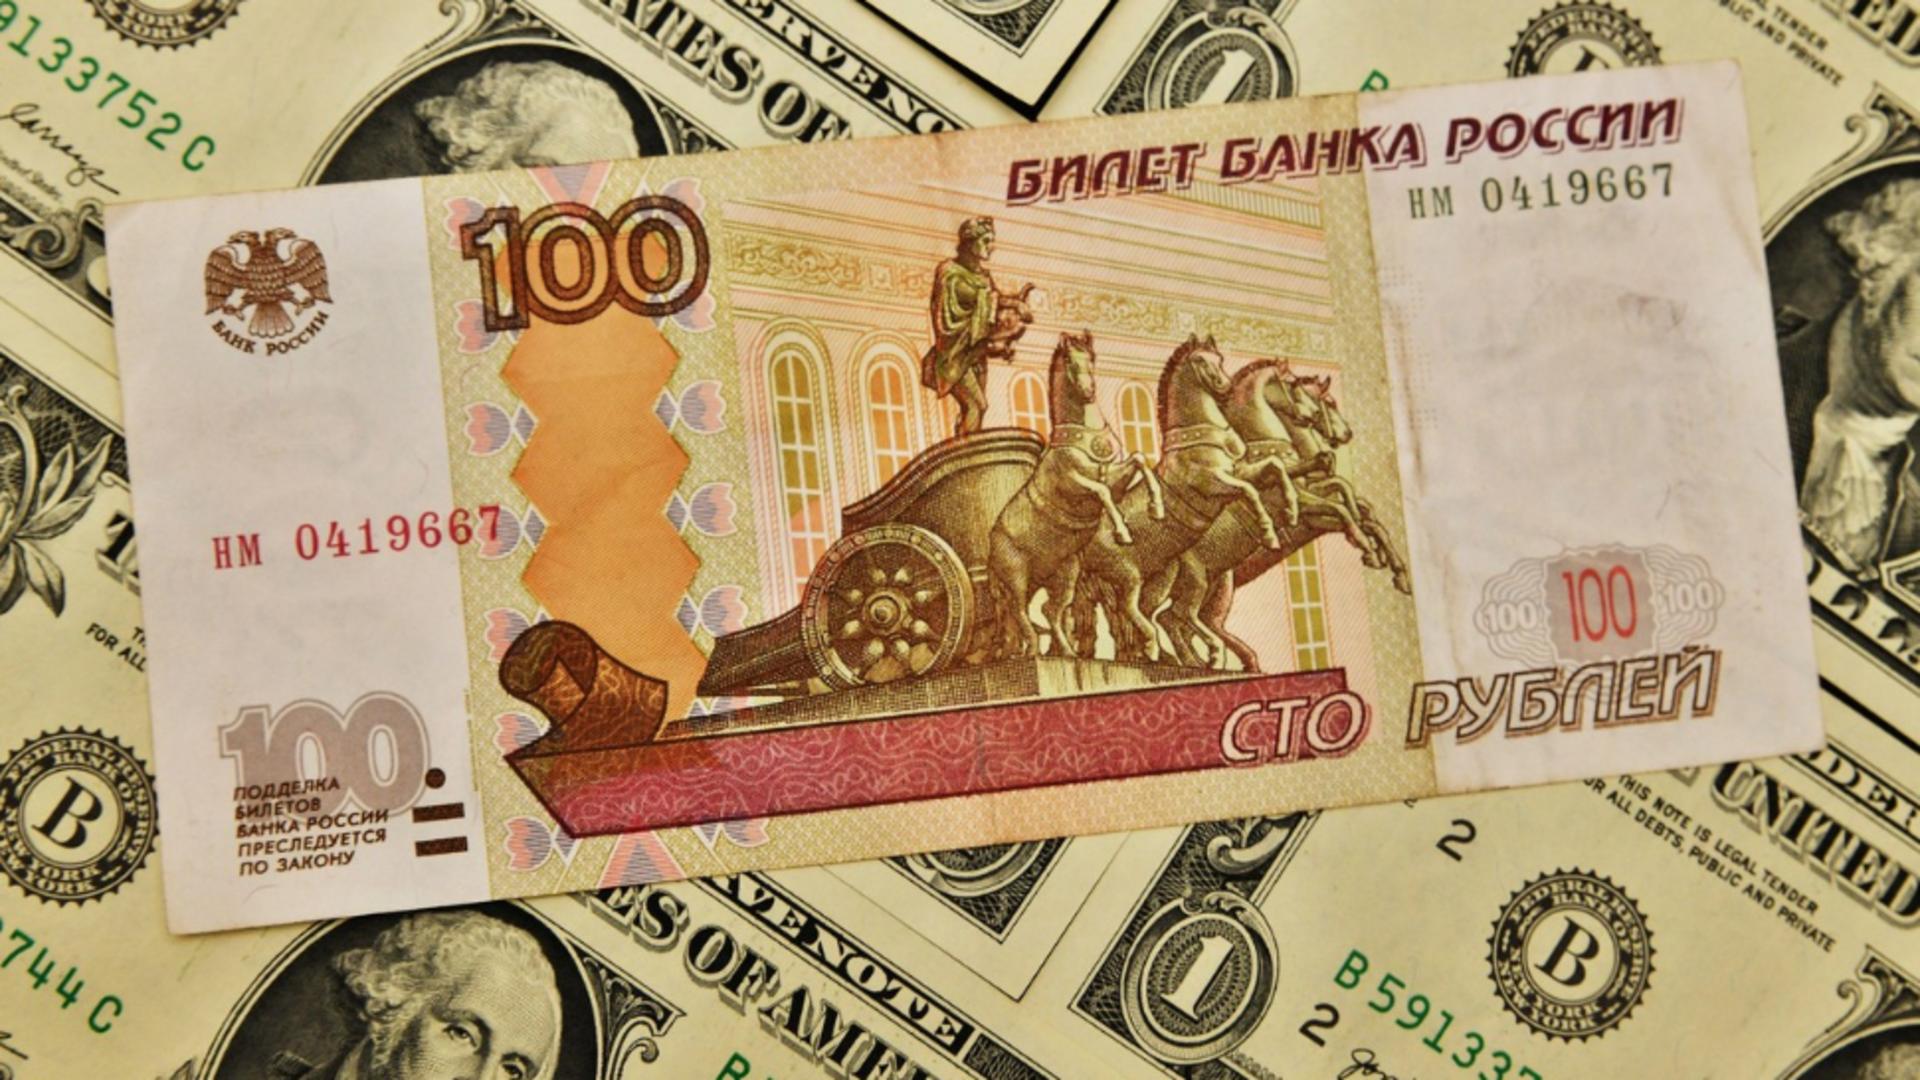 Datoriile rusești, plătite în ruble / Foto: Profi Media